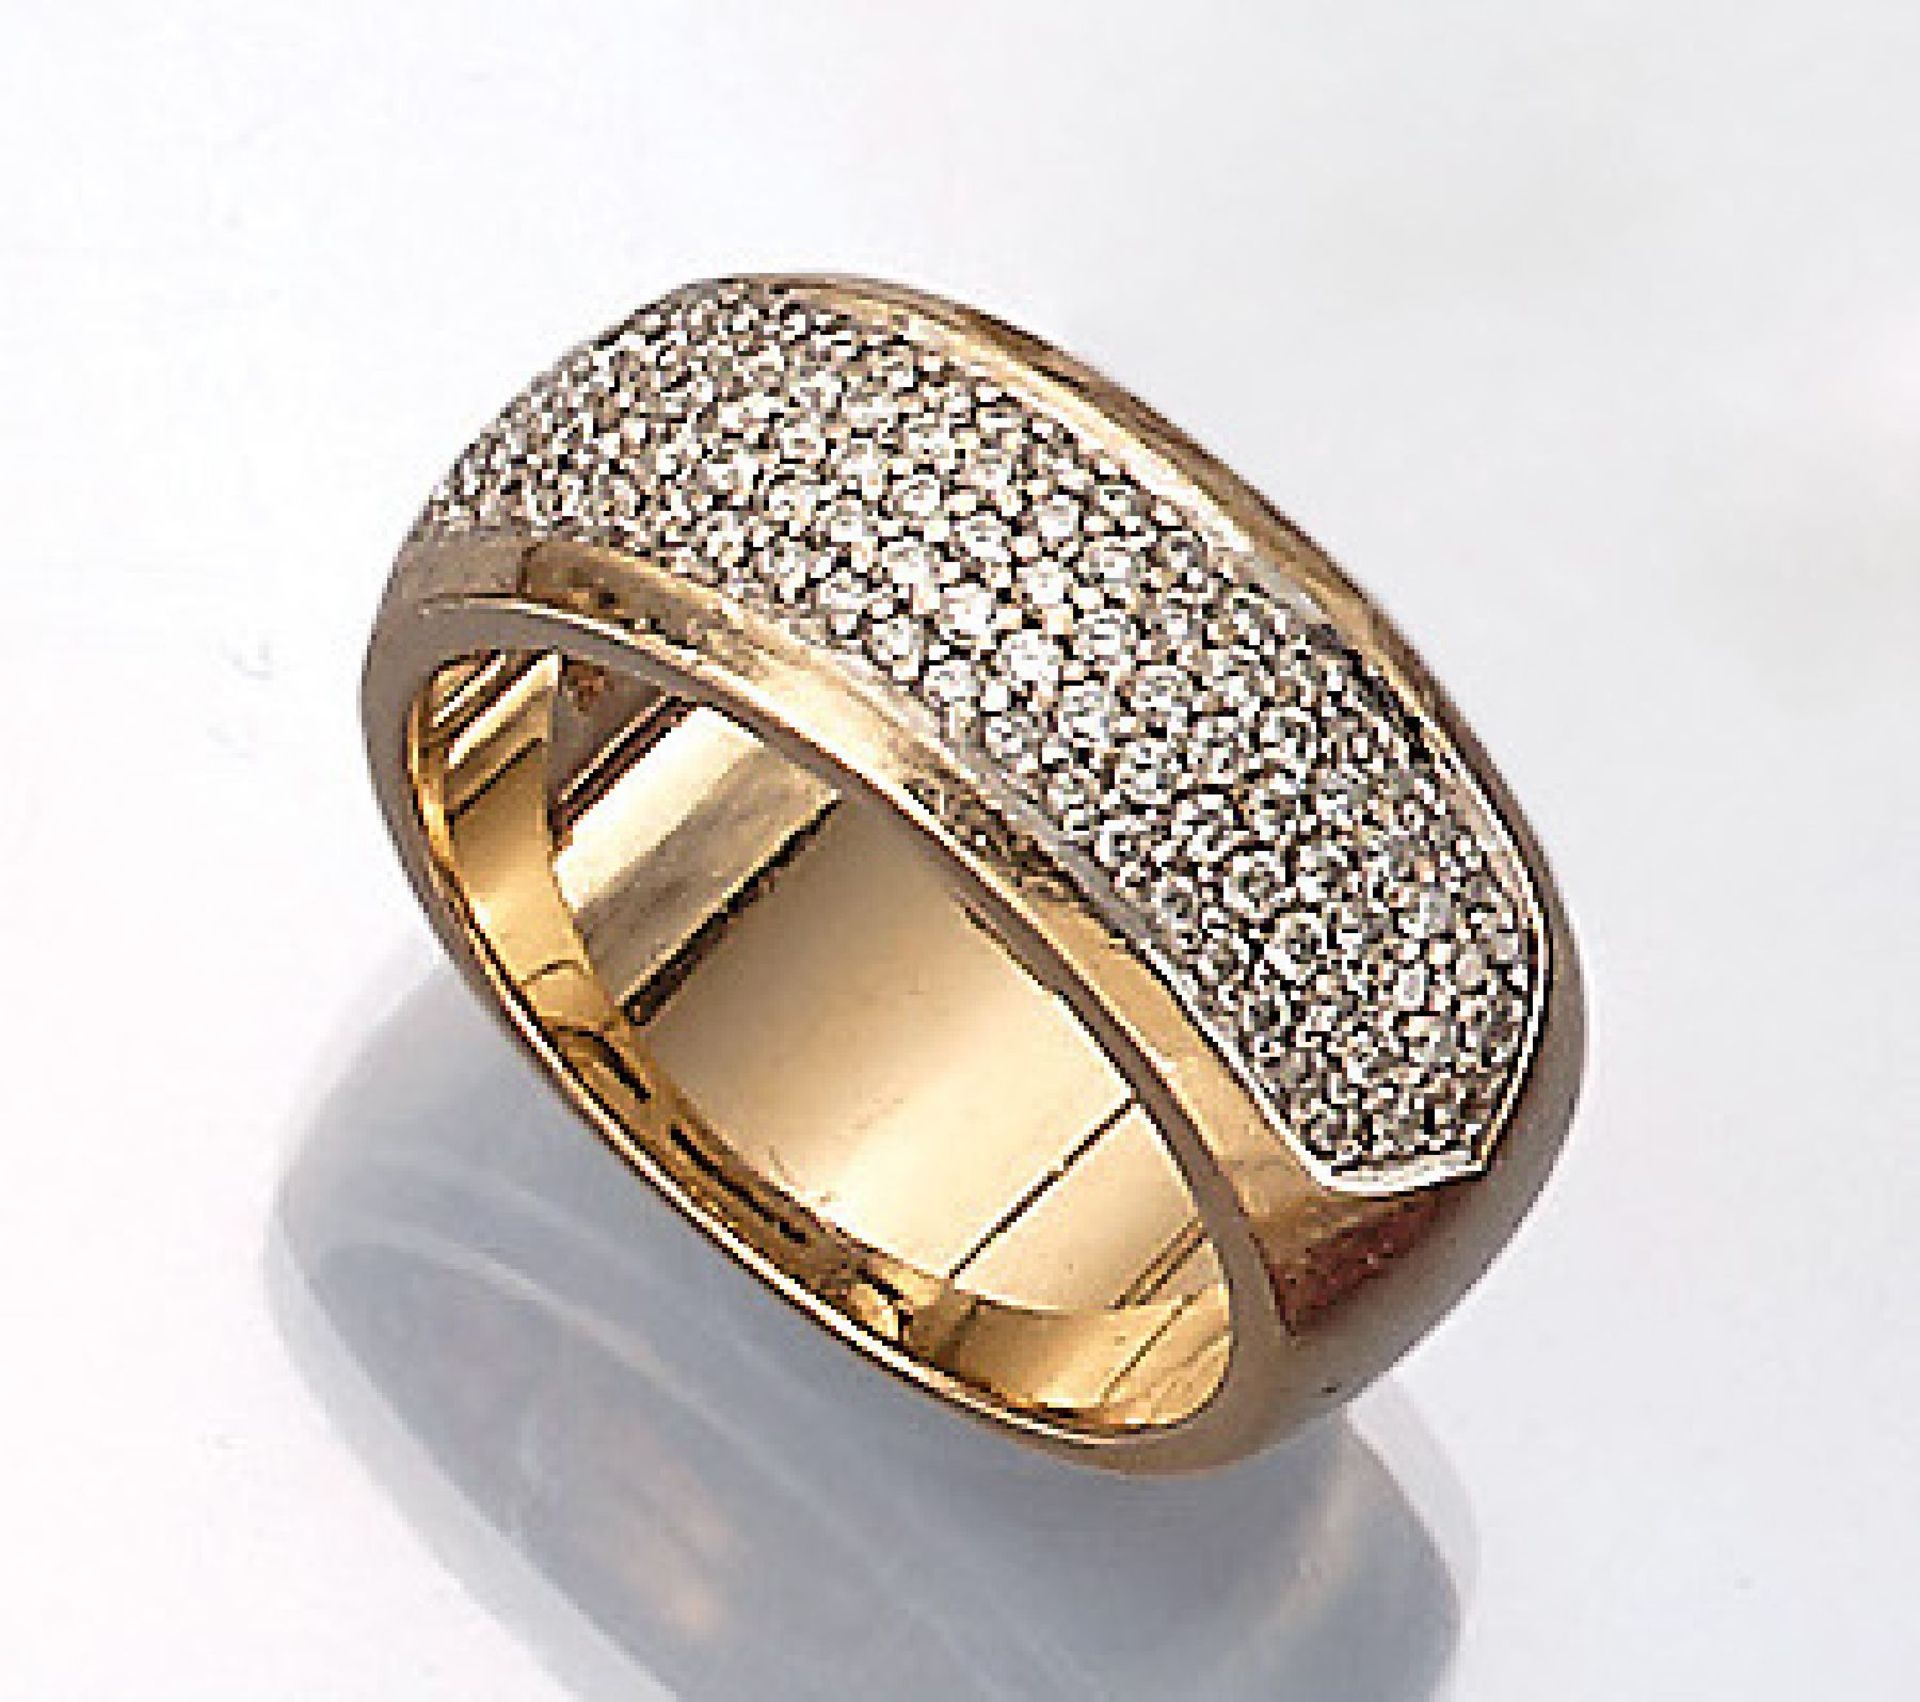 CHRIST 14 kt Gold Ring mit Brillanten, GG/WG 585/000, mittig Brillanten zus. ca. 1.5 ct Weiß/vvs-vs,